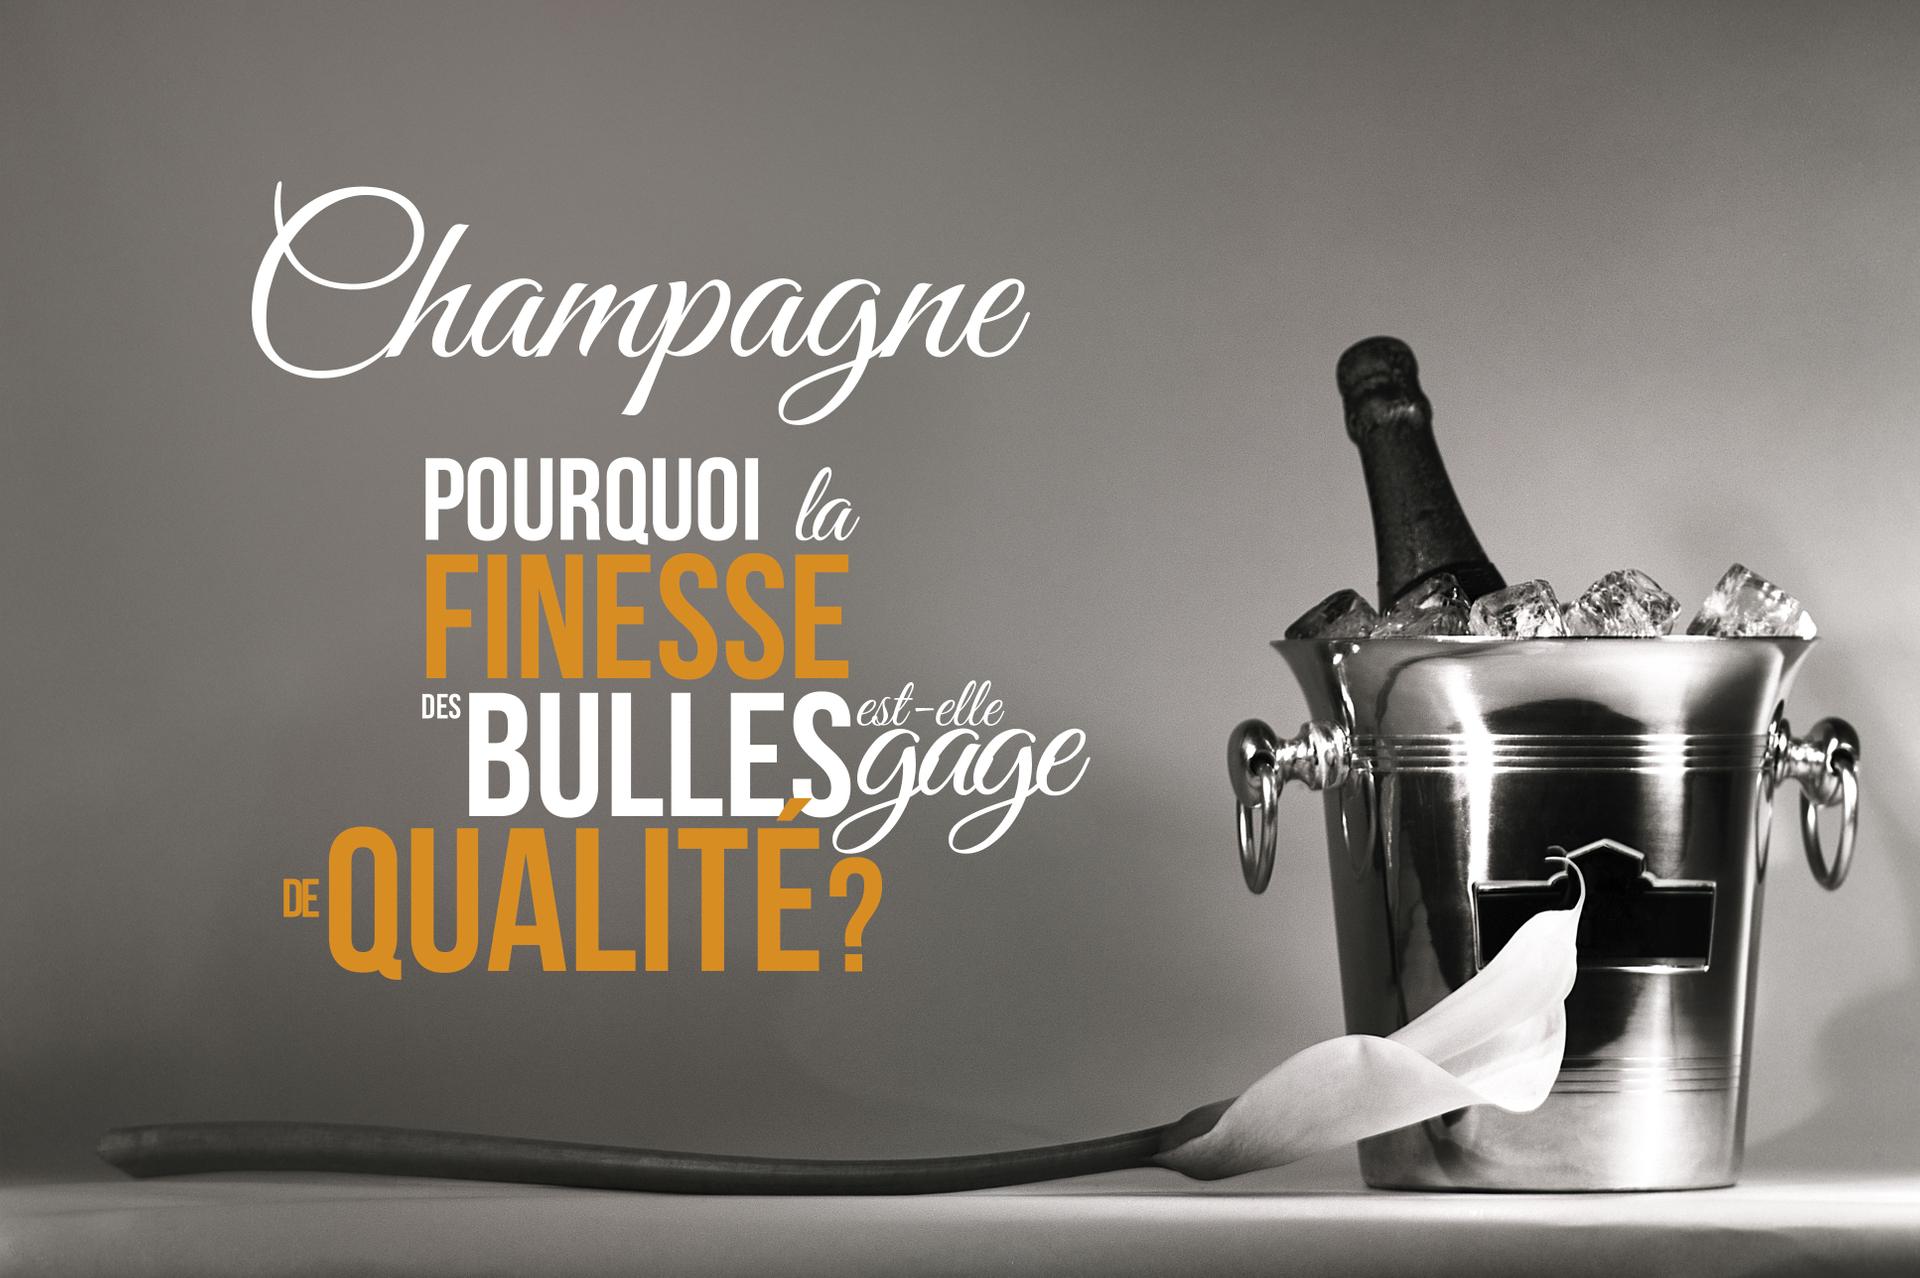 La taille des bulles a-t-elle un rapport avec la qualité du champagne ? -  Edition du soir Ouest-France - 31/12/2020